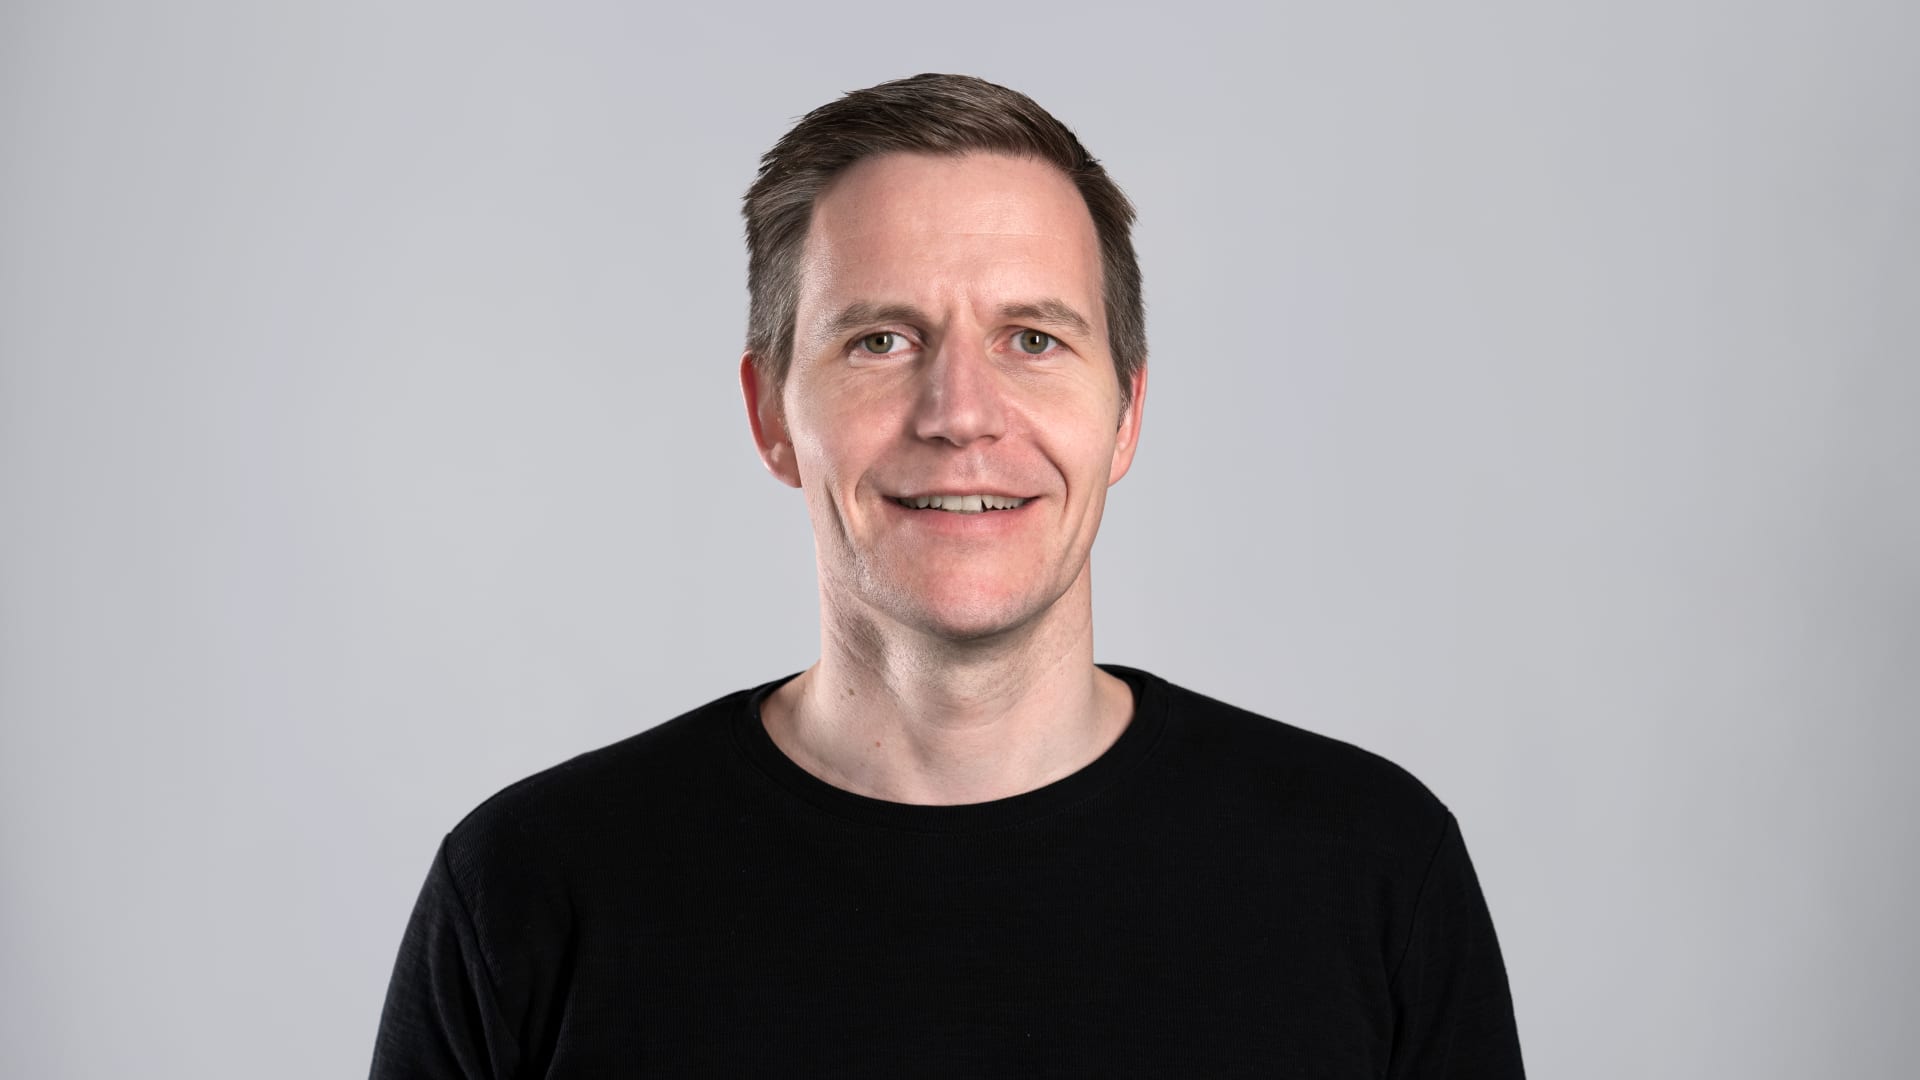 Axel Hefer, CEO of Trivago